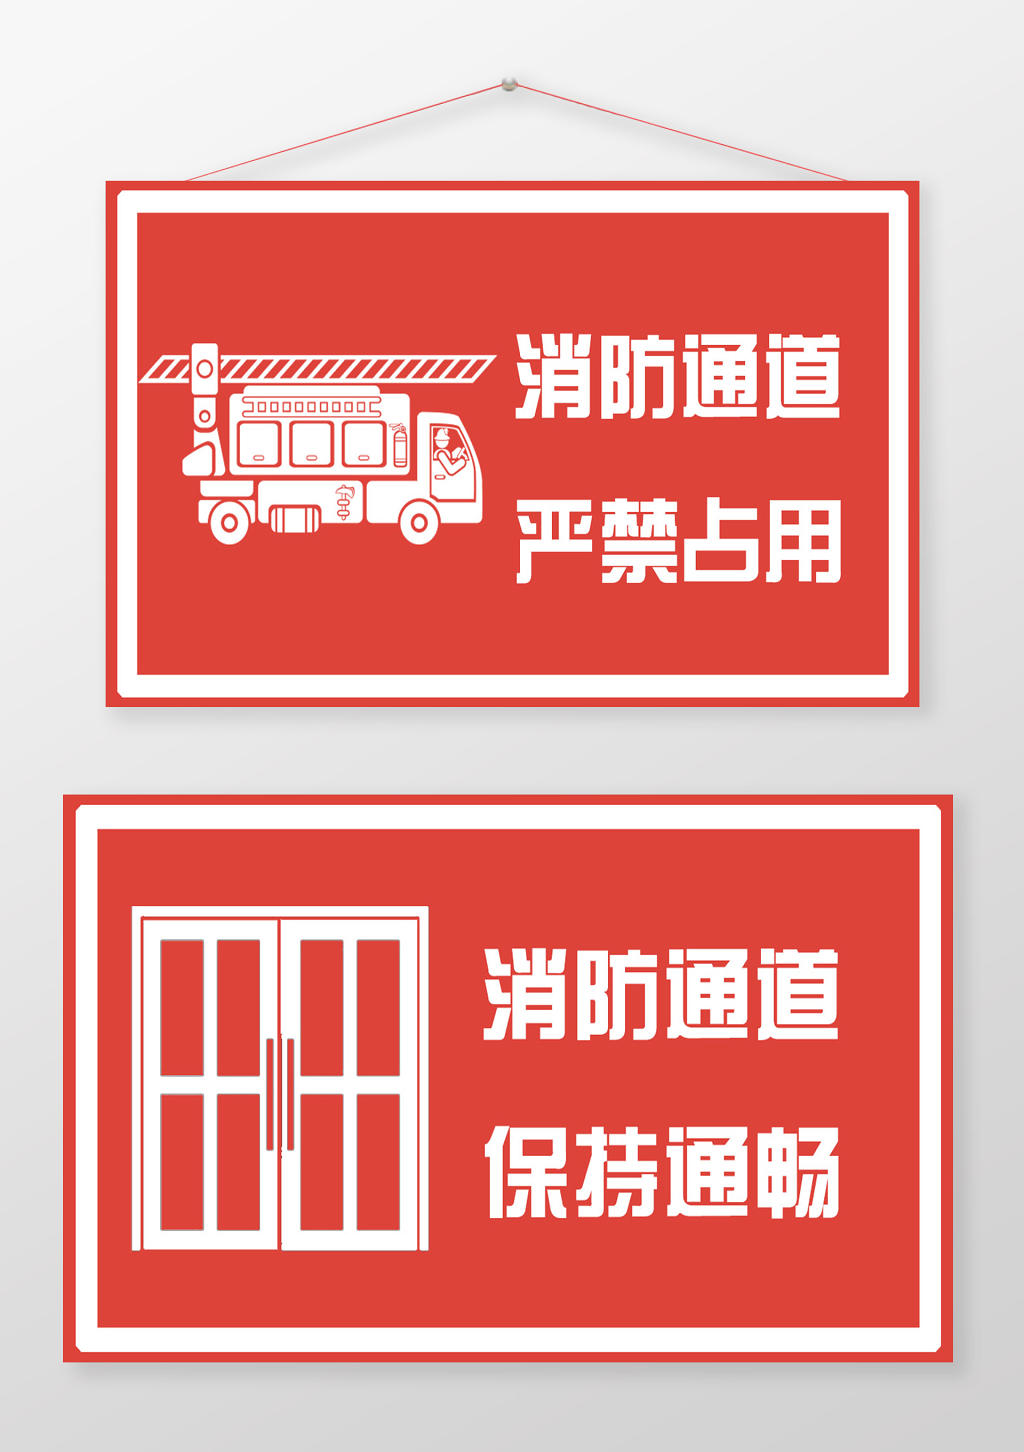 红色消防通道严禁占用保持通畅提示牌制度牌